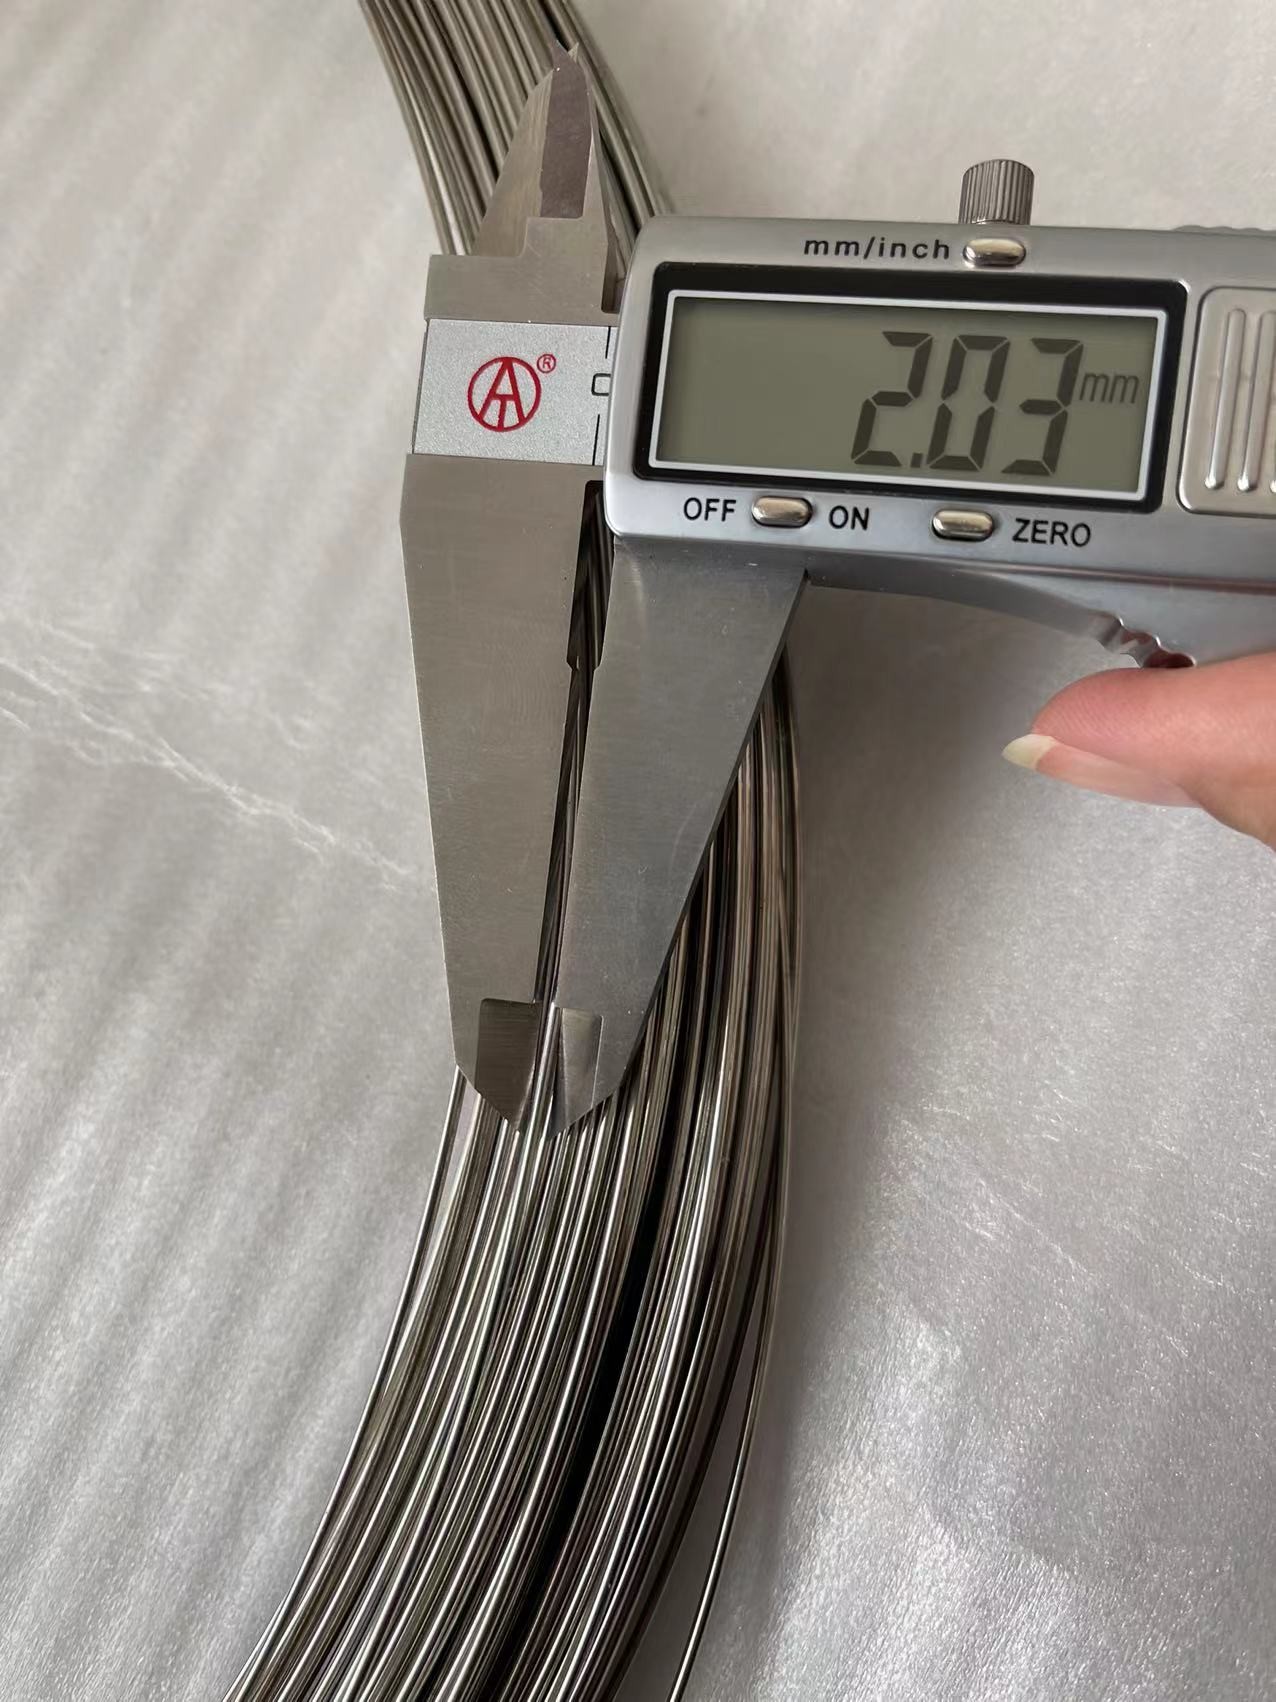 2.03mm Diameter Kawat Kawat Baja Galvanis Dicelup Panas Berat Koil 300kg